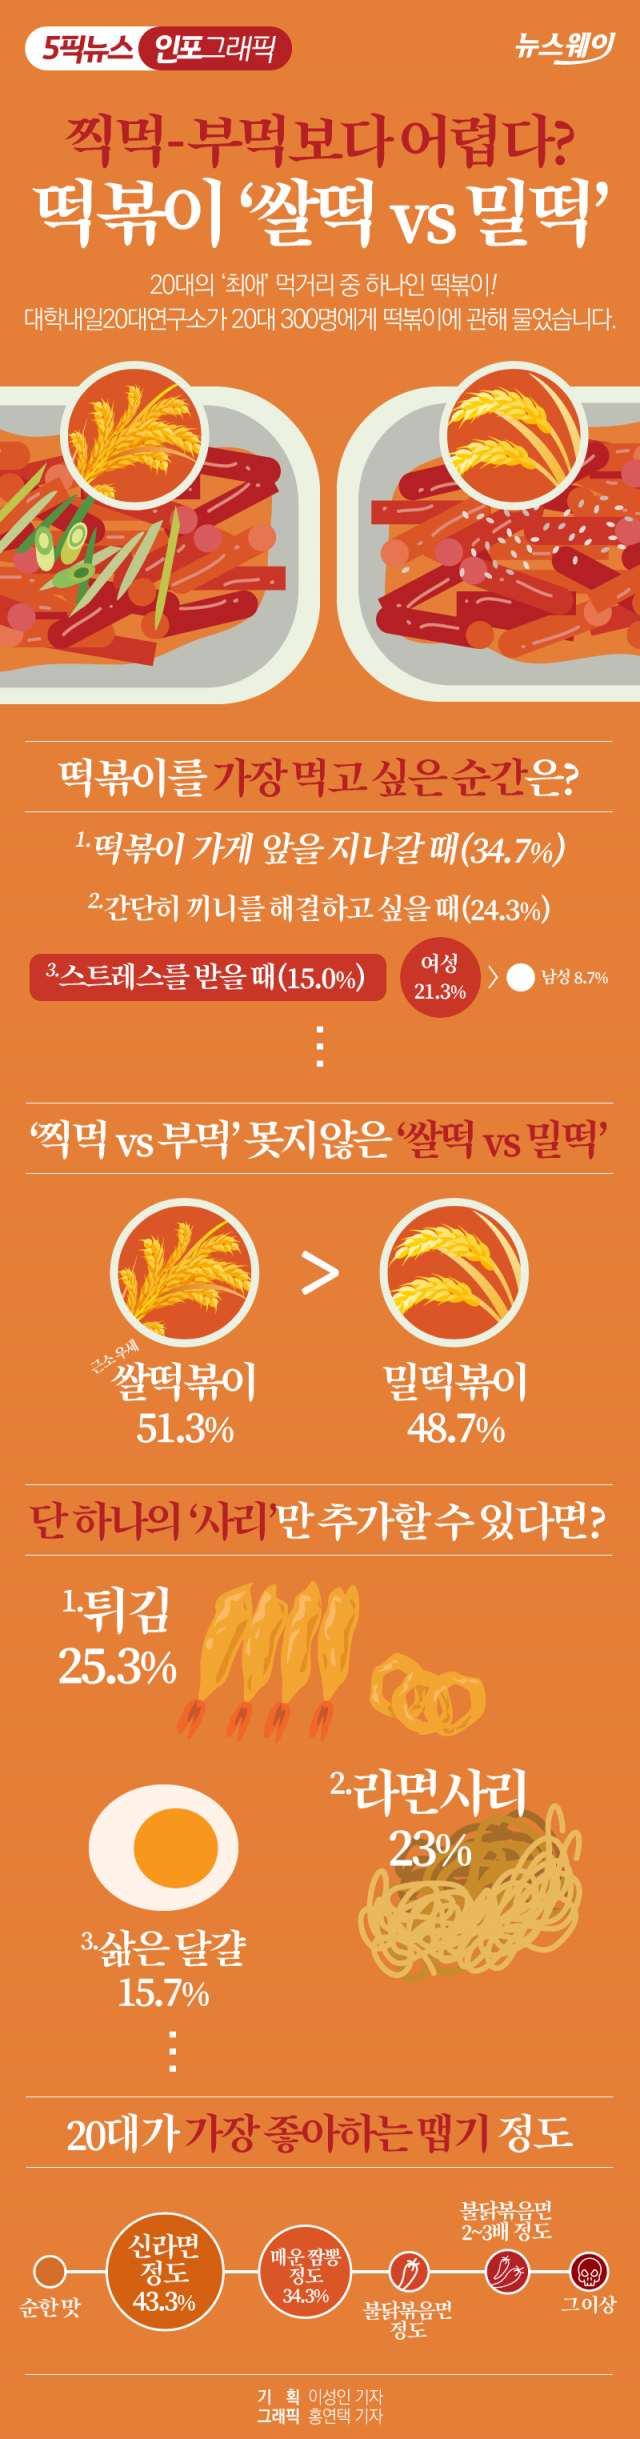 찍먹-부먹보다 어렵다? 떡볶이 ‘쌀떡 vs 밀떡’ 기사의 사진